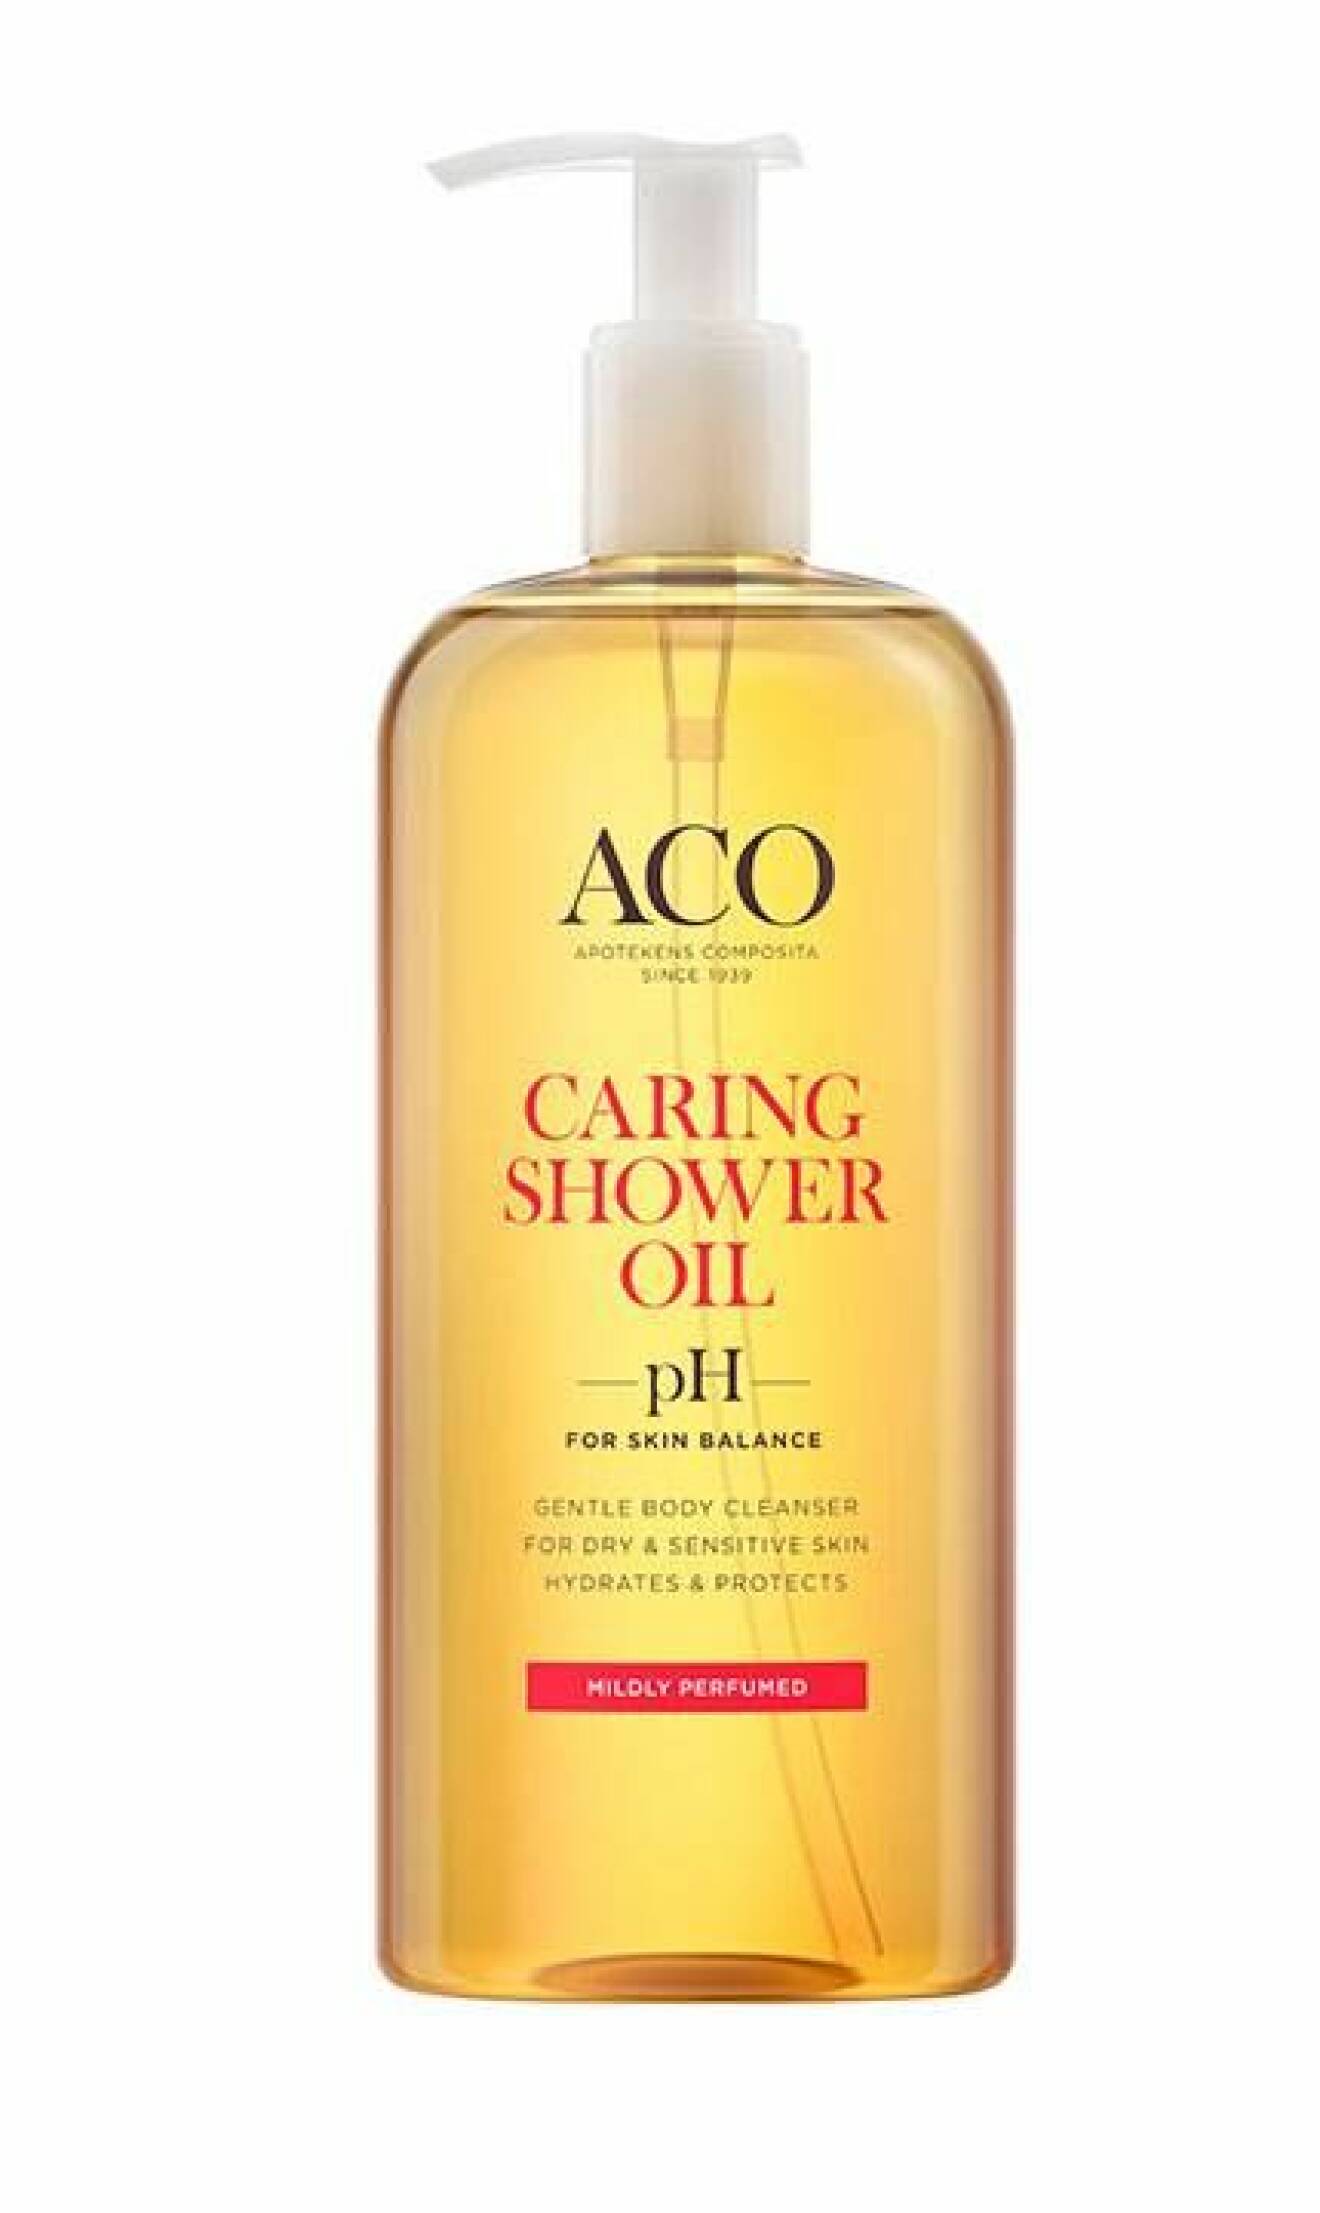 Caring shower oil från ACO